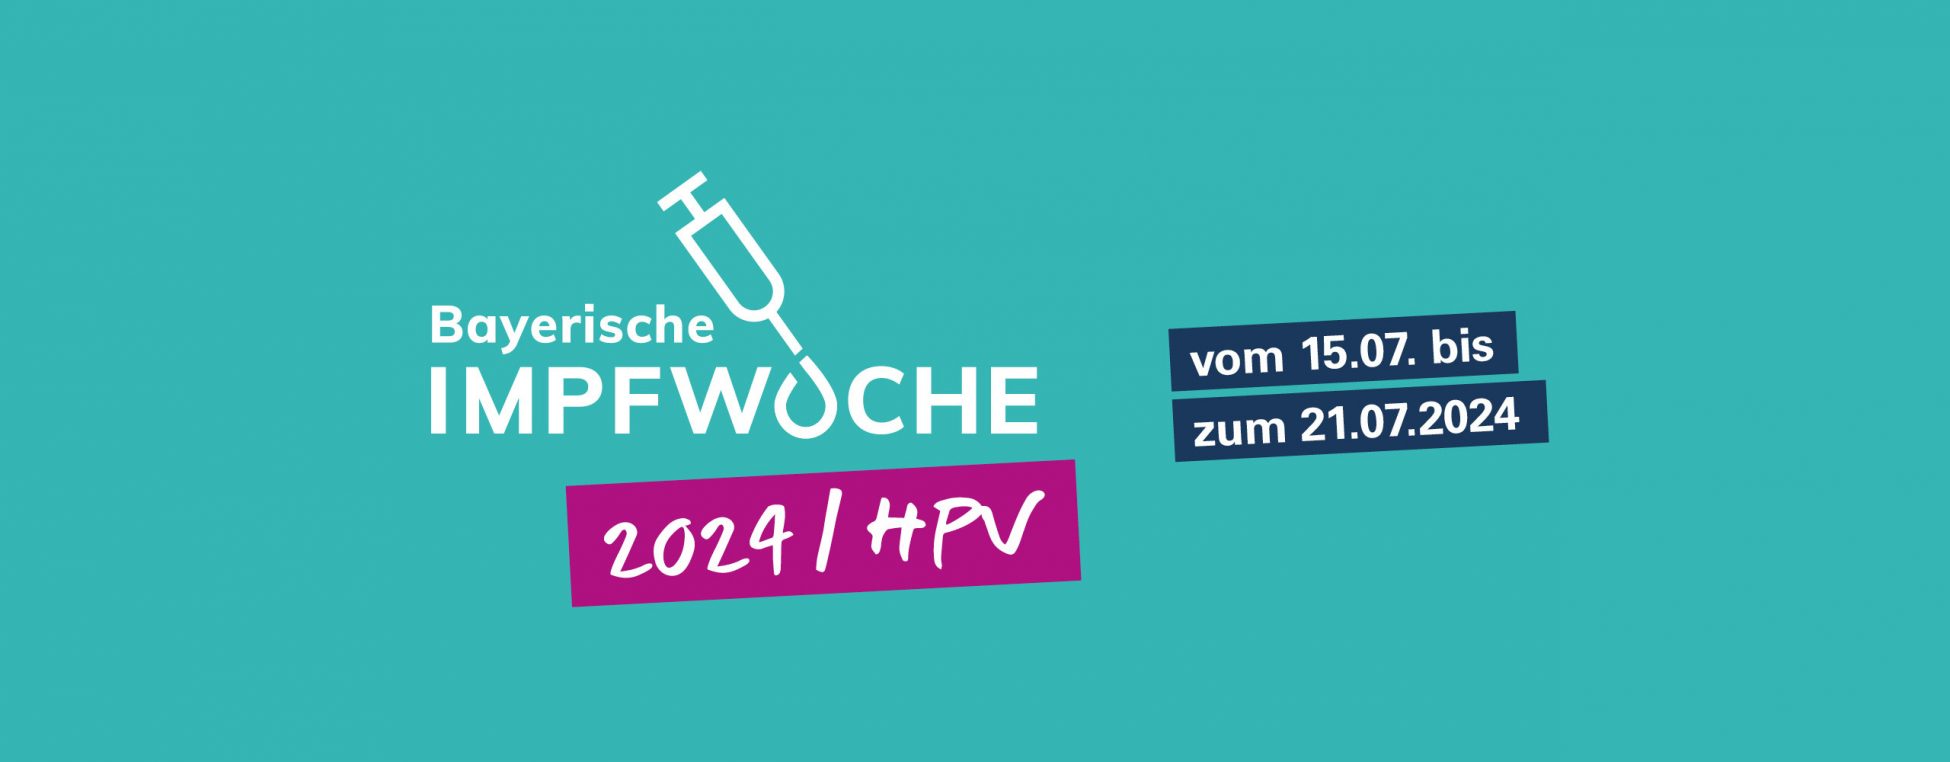 Bayerische Impfwoche 2024 - 15. bis 21. Juli 2024 - HPV